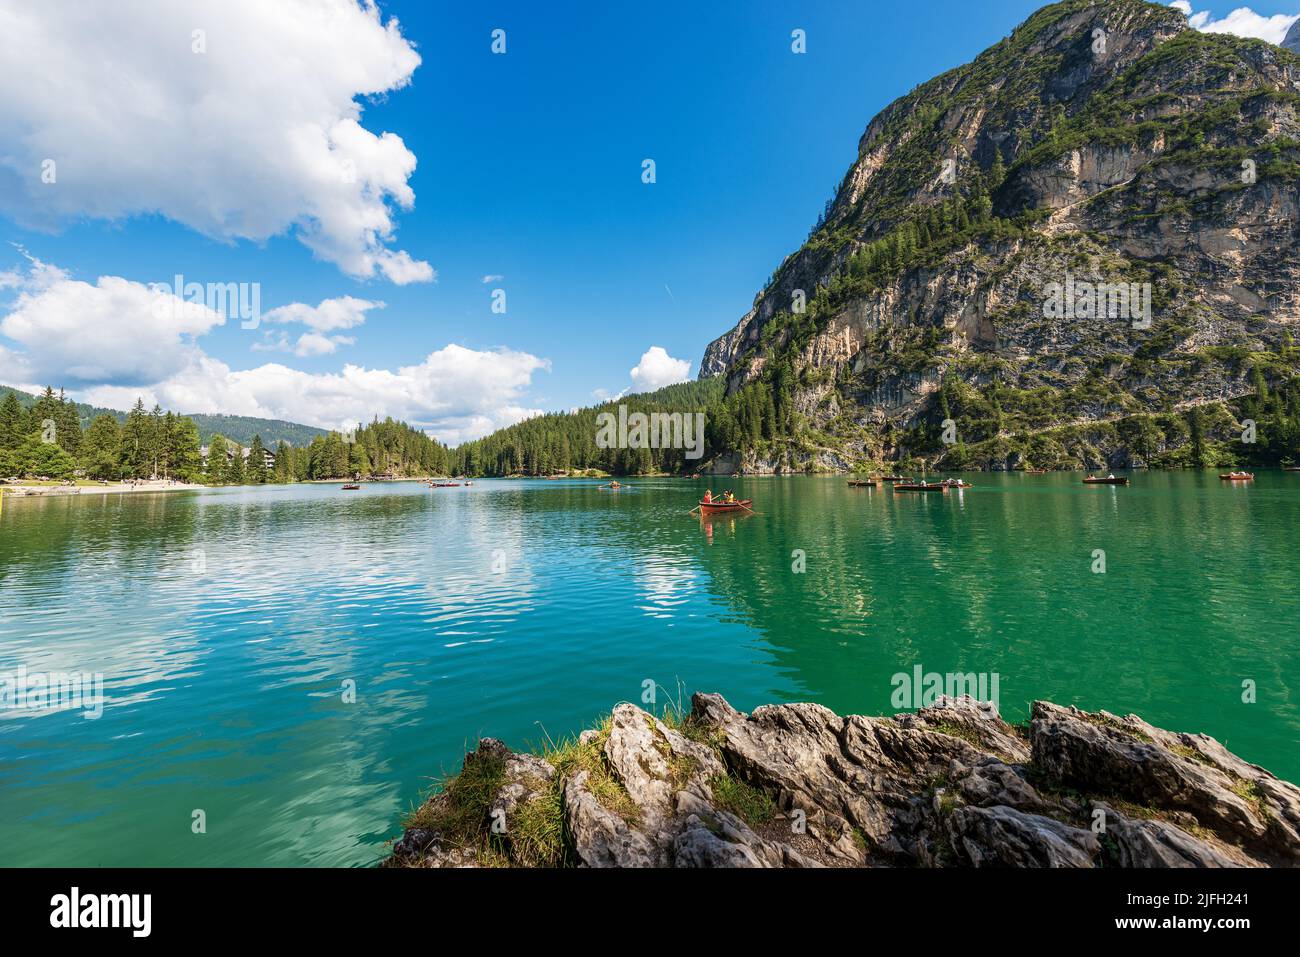 Lago di Prags oder Pragser Wildsee. Kleiner alpiner See und Gebirgskette des Sasso del Signore. Dolomiten, Südtirol, Trentino-Südtirol, Italien. Stockfoto